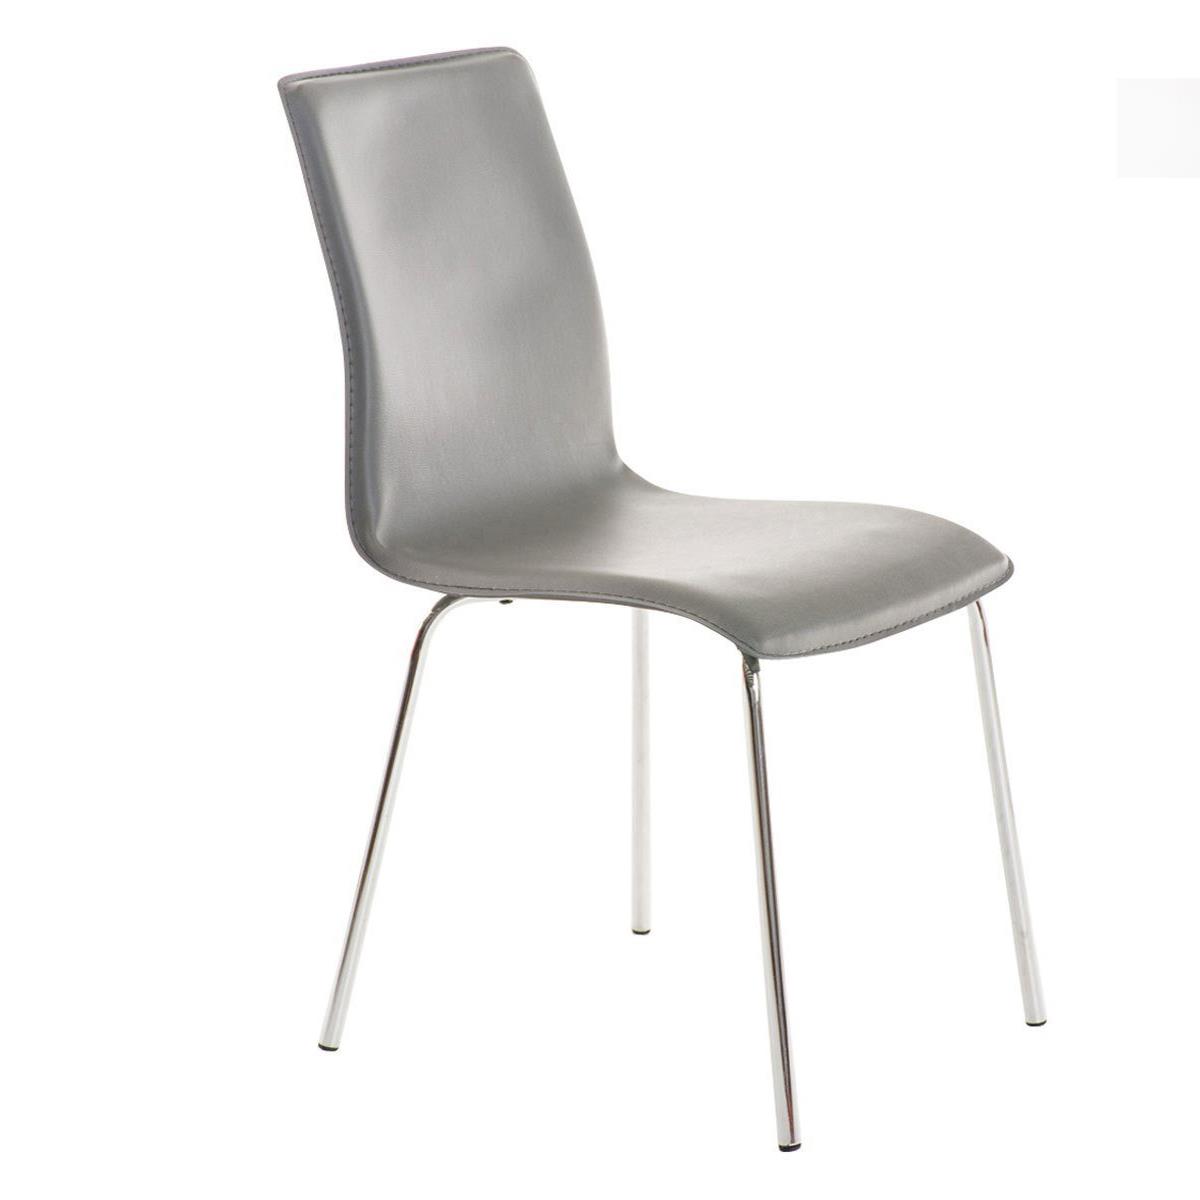 Cadeira de Visita MIKI, Design Exclusivo, Forrada Em Pele, Cor Cinzento